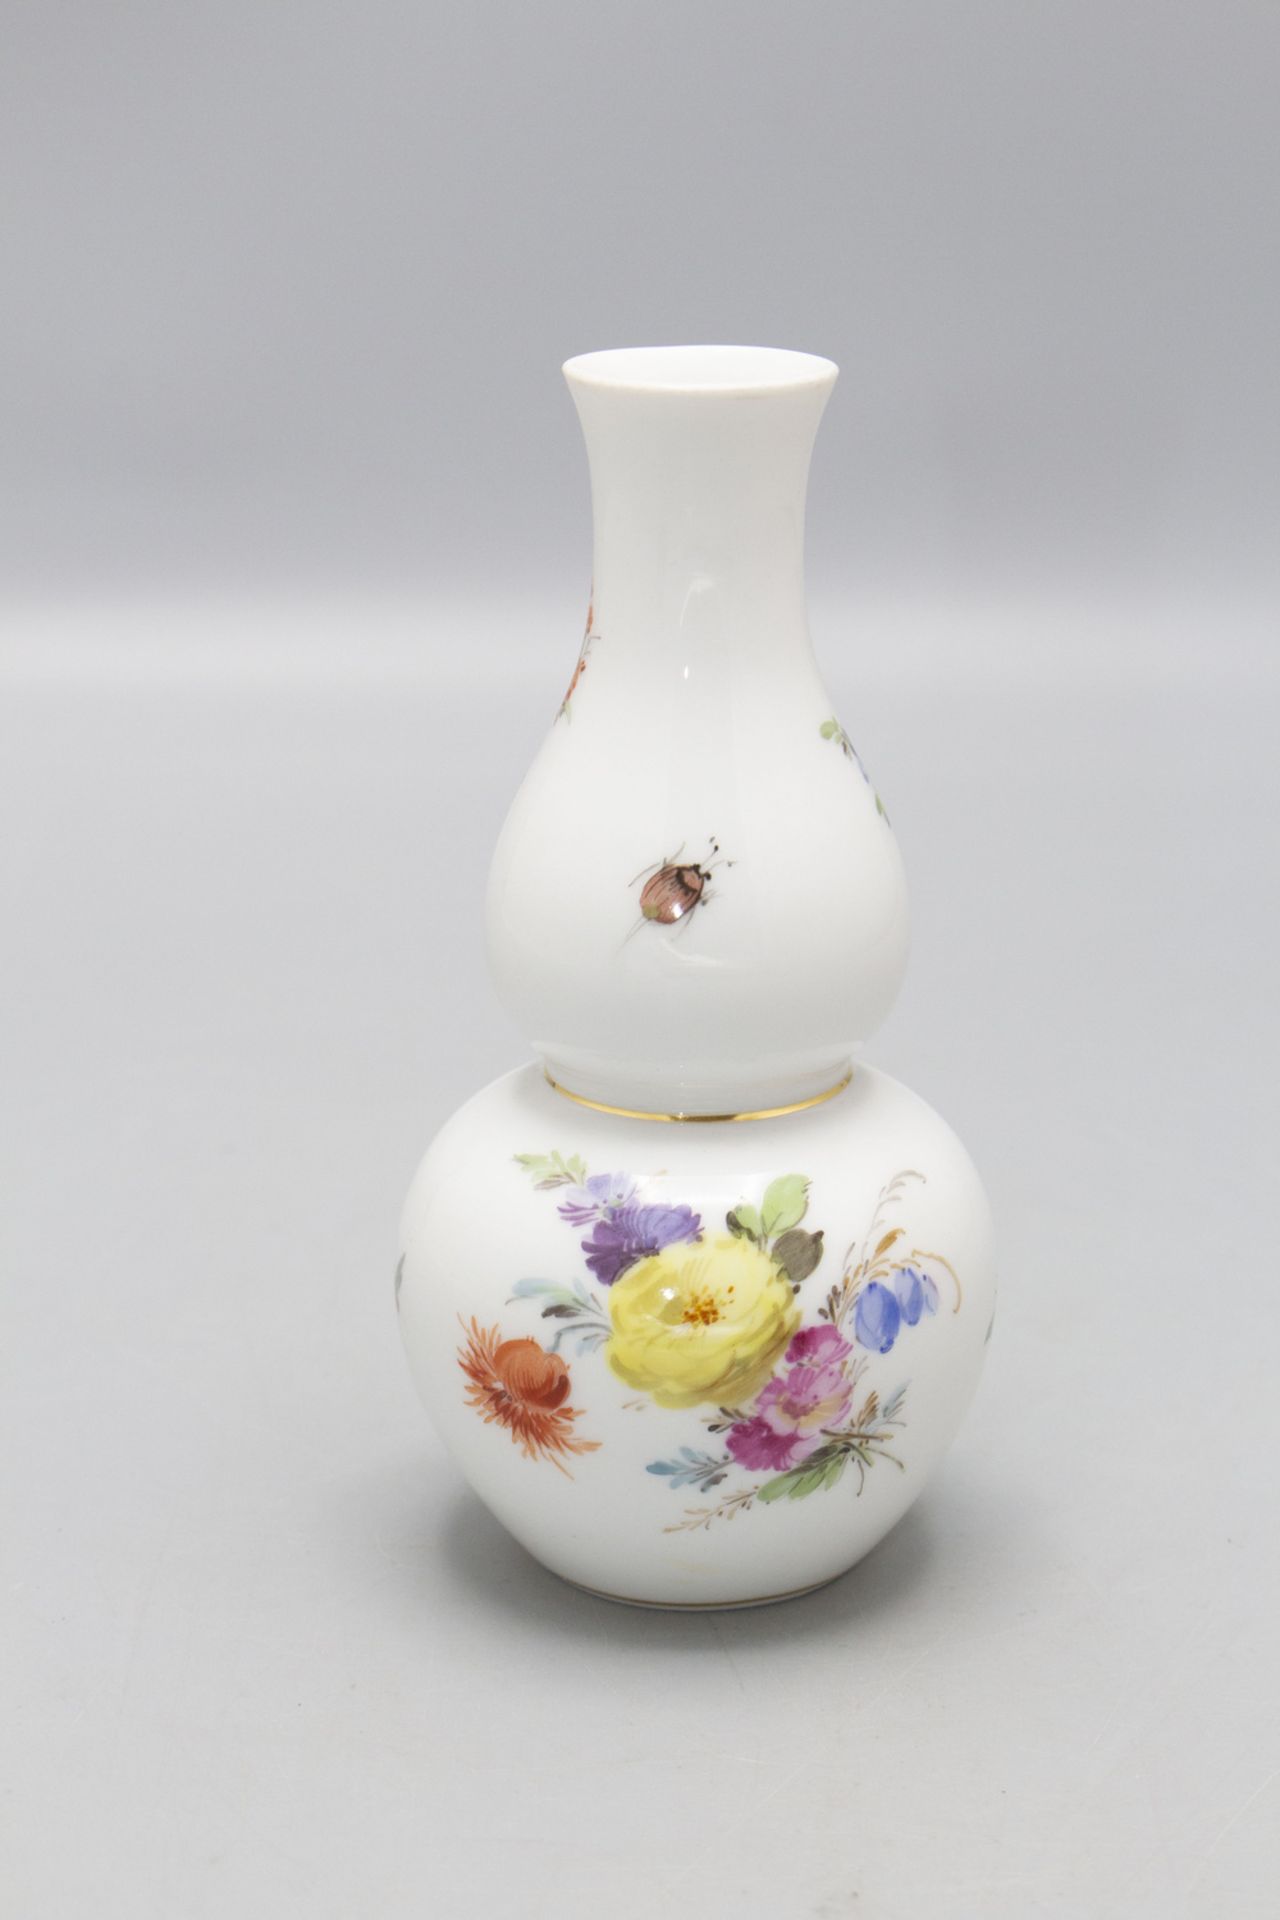 Kürbisvase mit Blumenbouquets und Insekten / A vase with flowers and insects, Meissen, um 1860 - Image 2 of 3